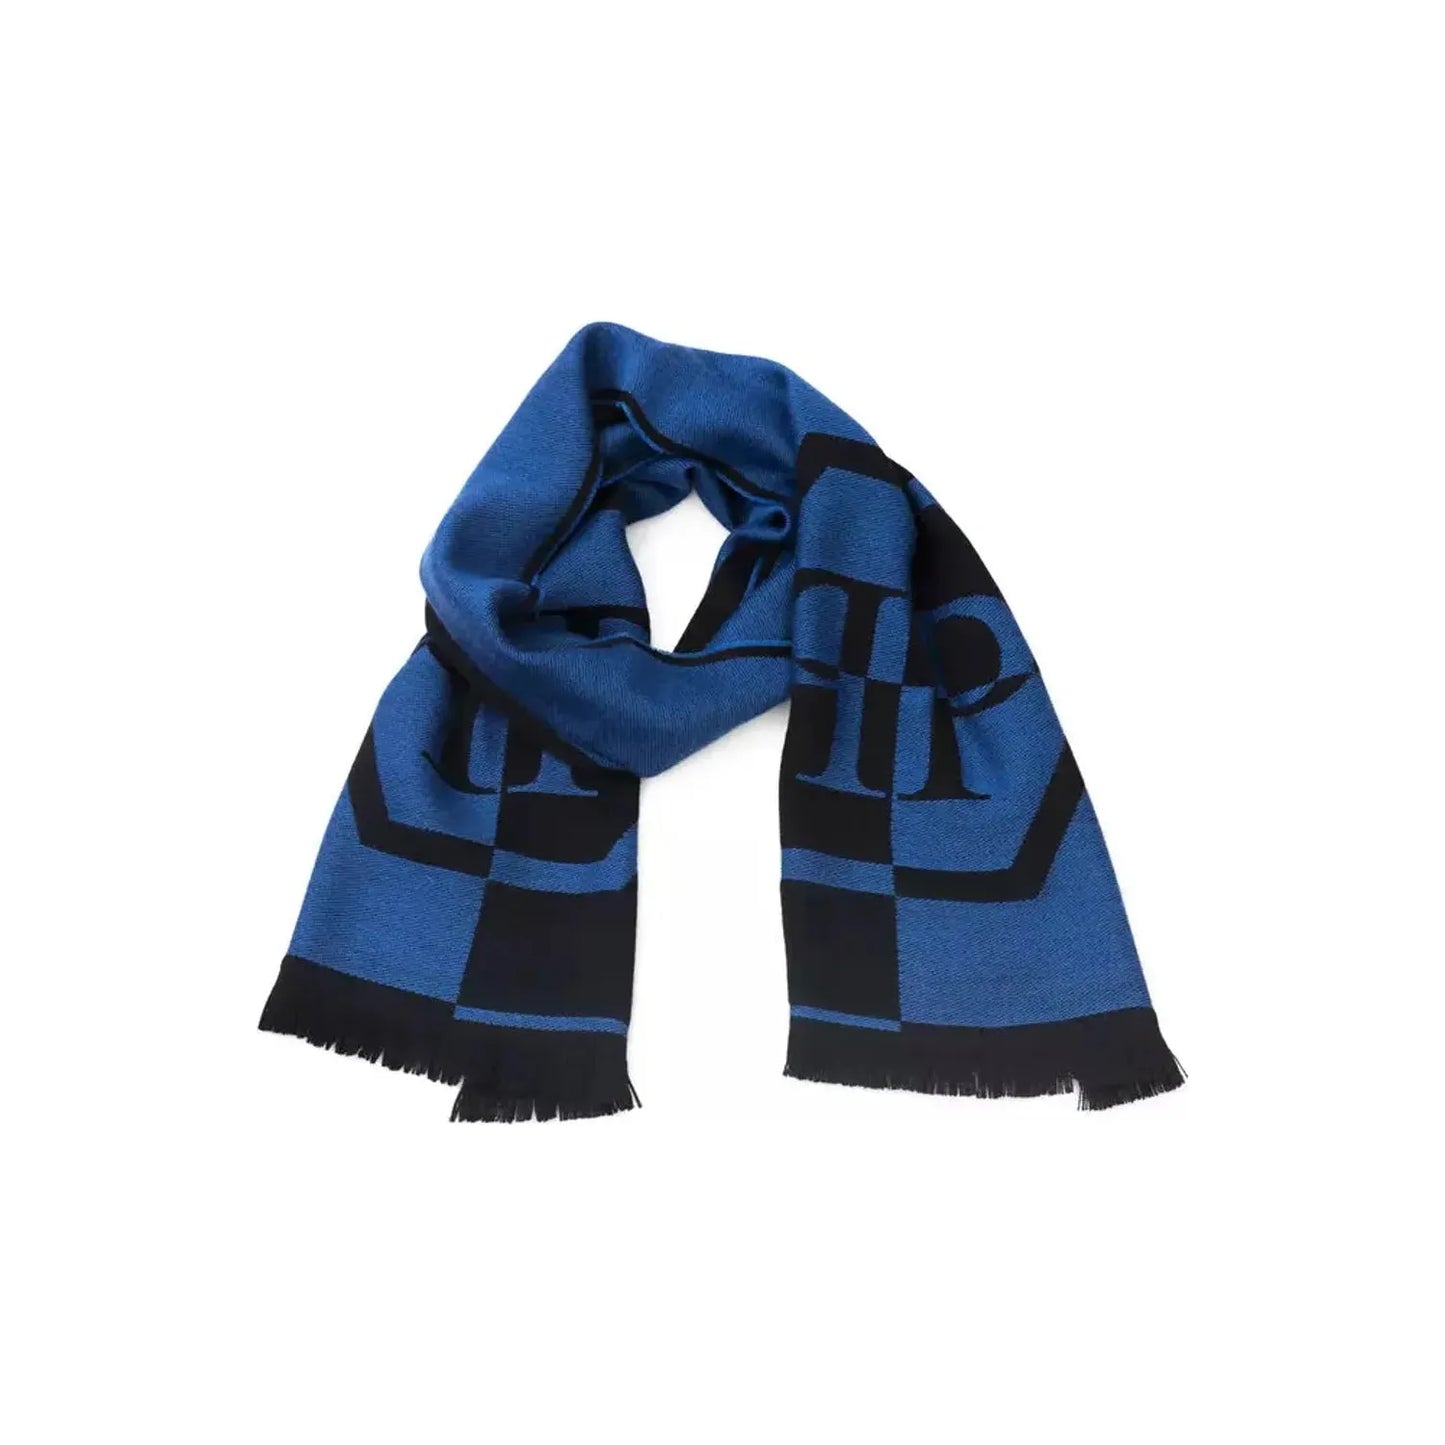 Philipp Plein Elegant Fringed Logo Scarf in Blue Wool Wrap Shawl Scarf blue-wool-scarf-7 product-22231-1446550906-22-4d579a0d-b3a.webp